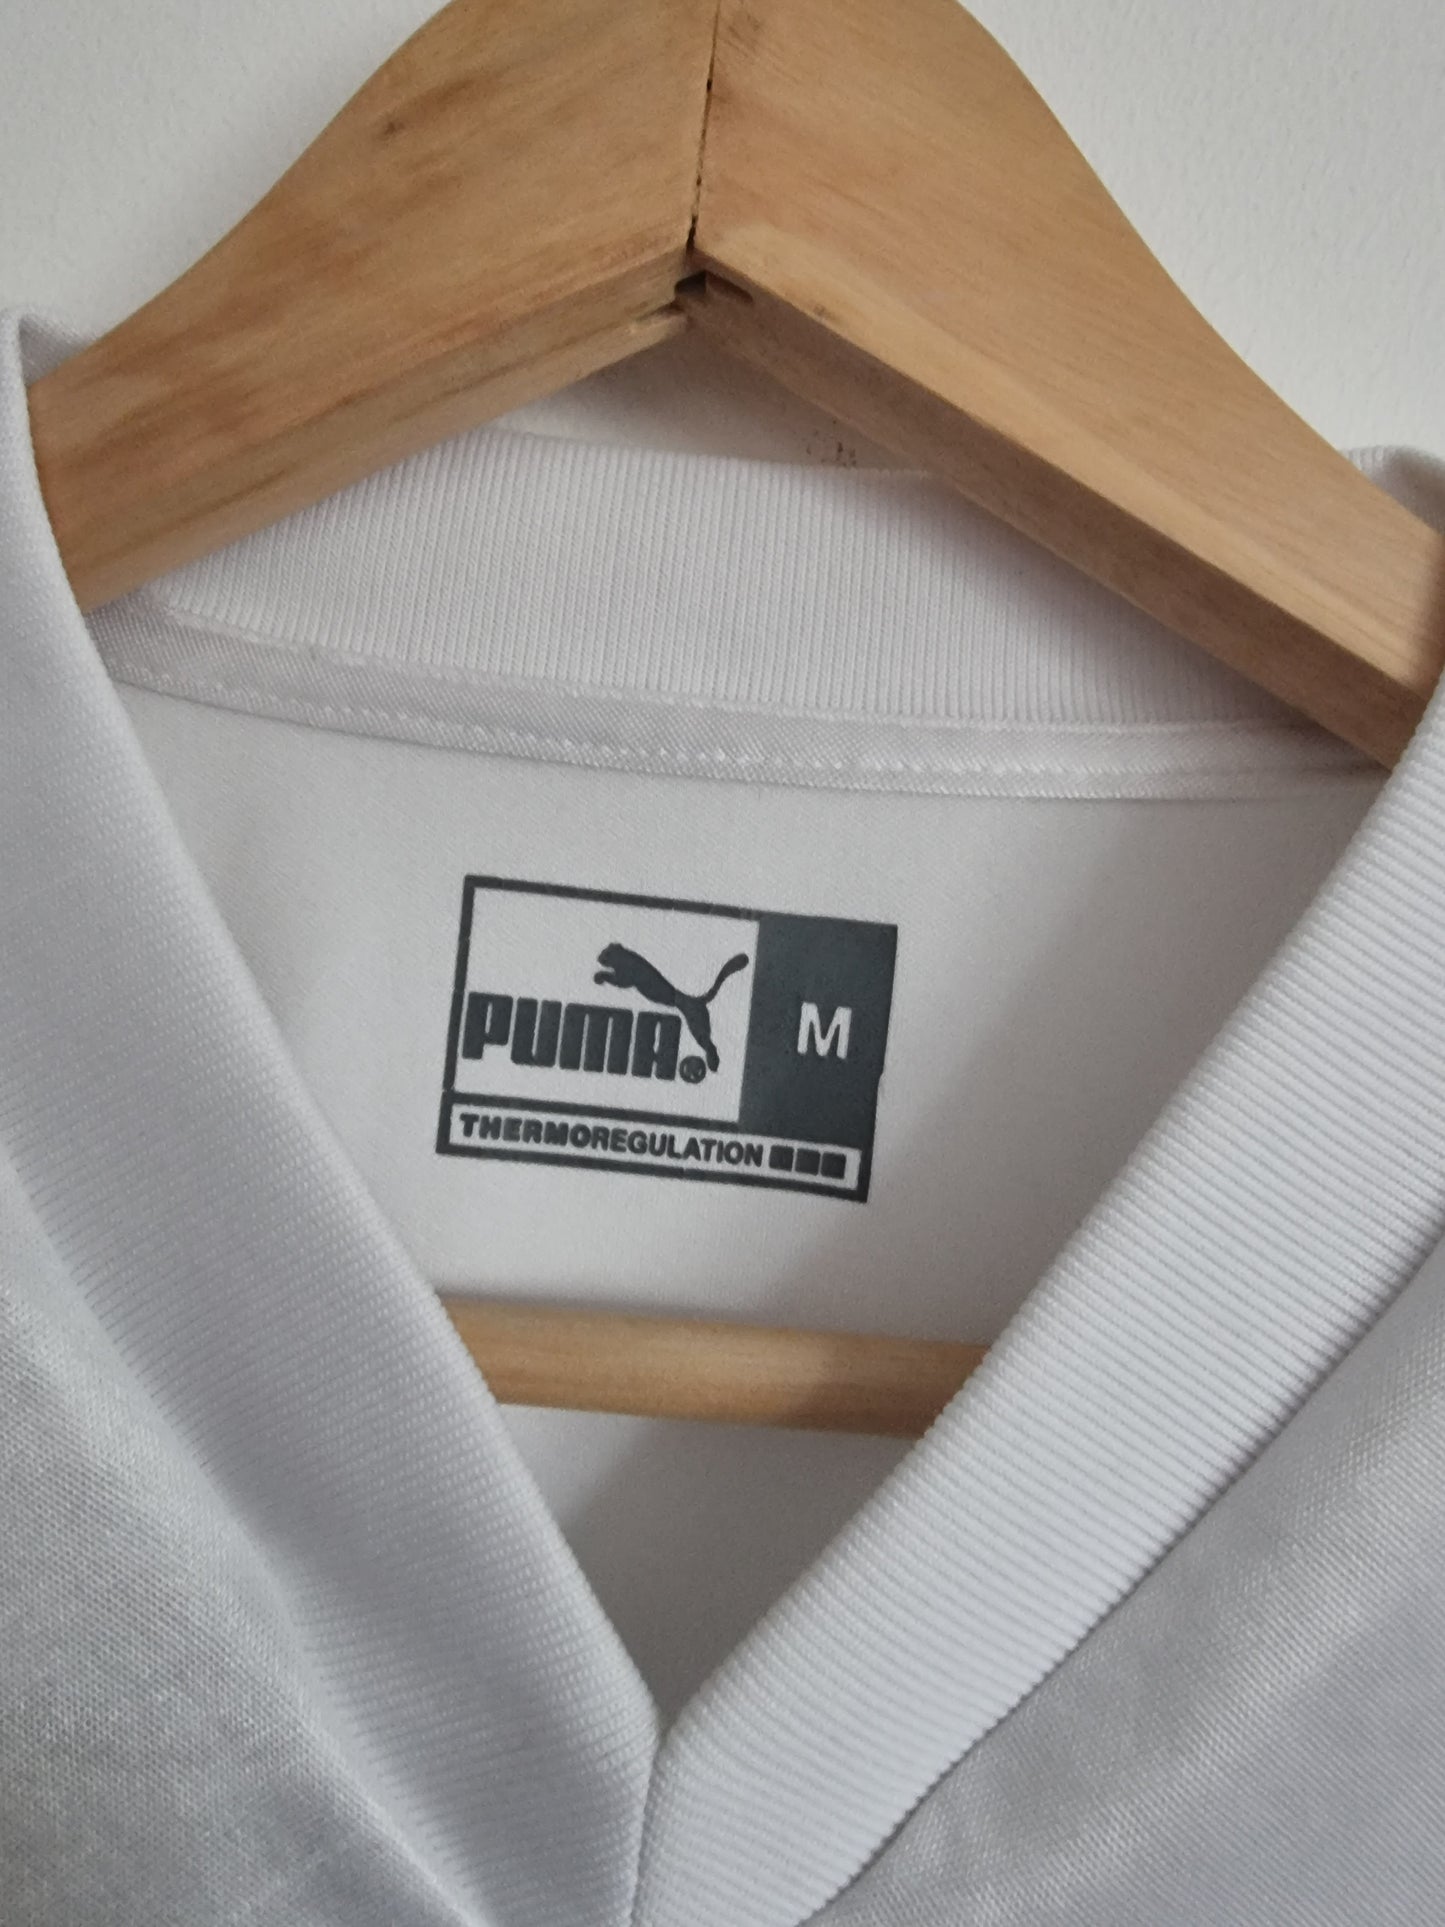 Puma Besiktas 02/03 Centenary Home Shirt Medium